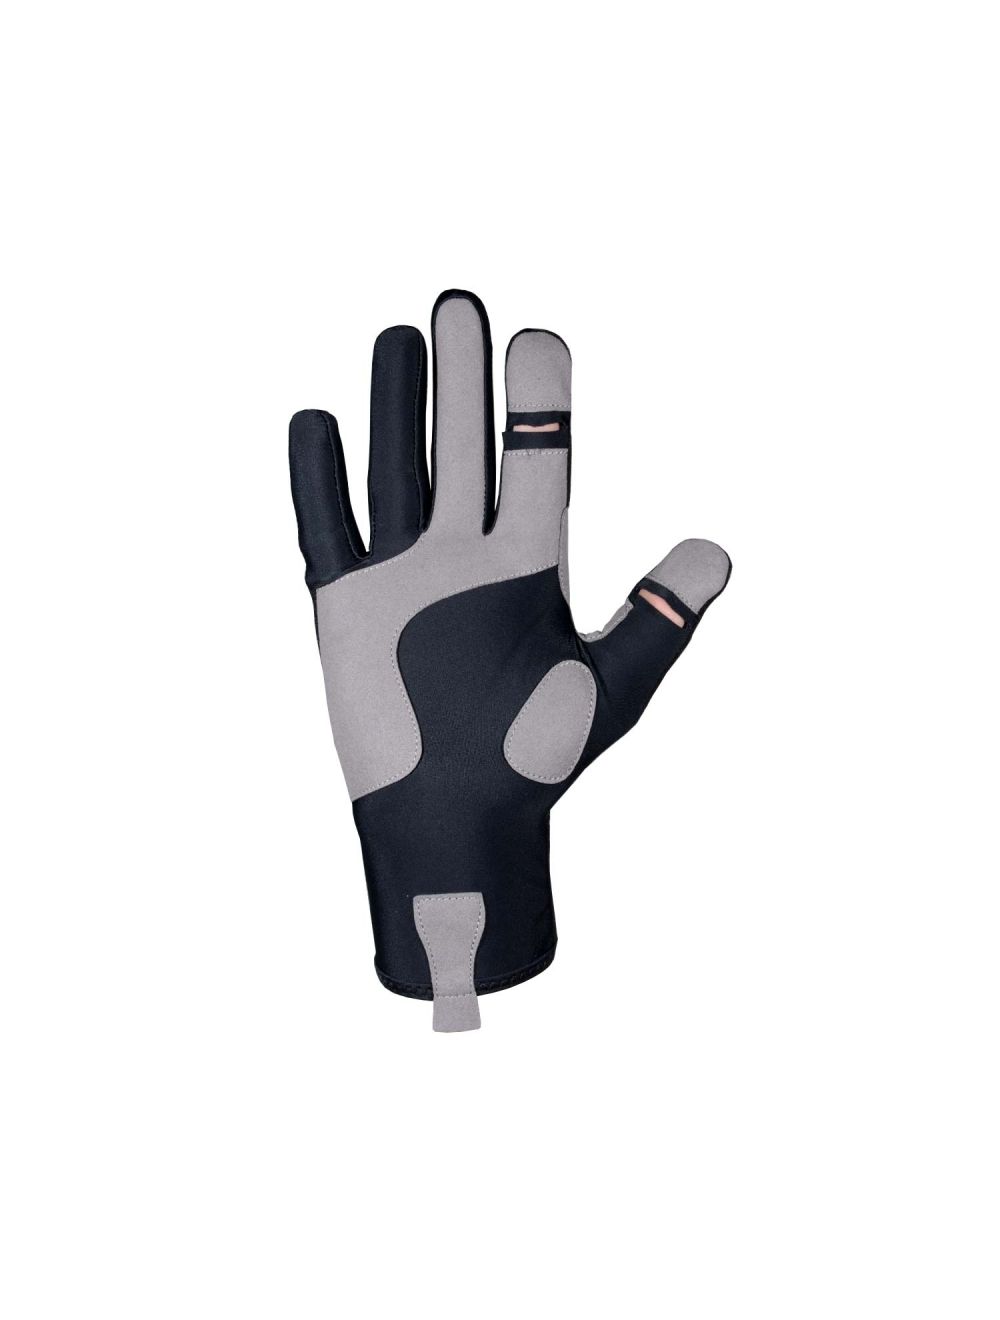 Specialist Glove - Full Finger